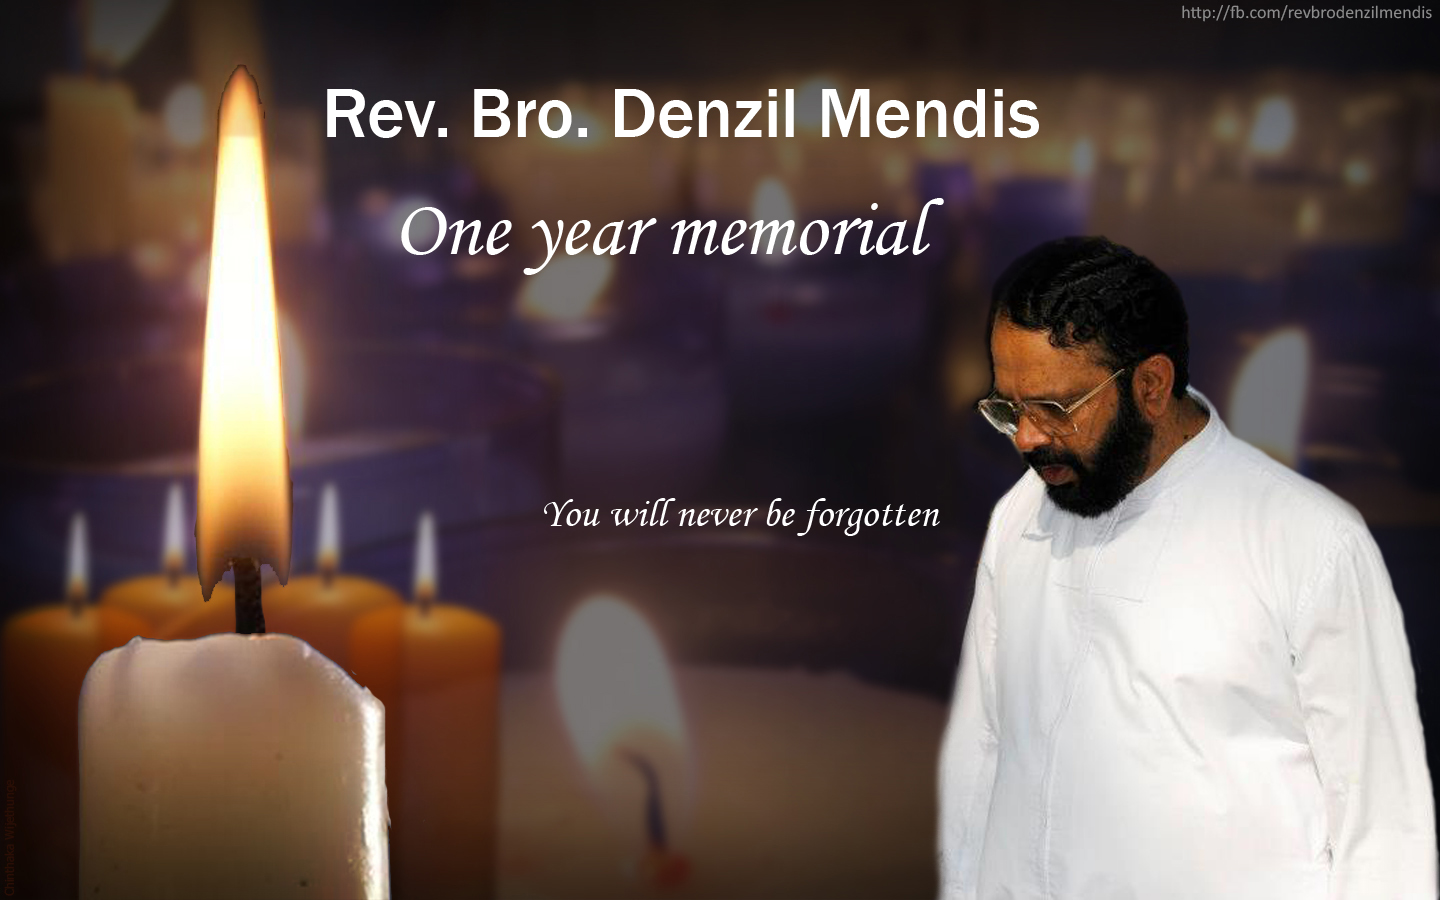 One year memorial of Rev. Bro. Denzil Mendis